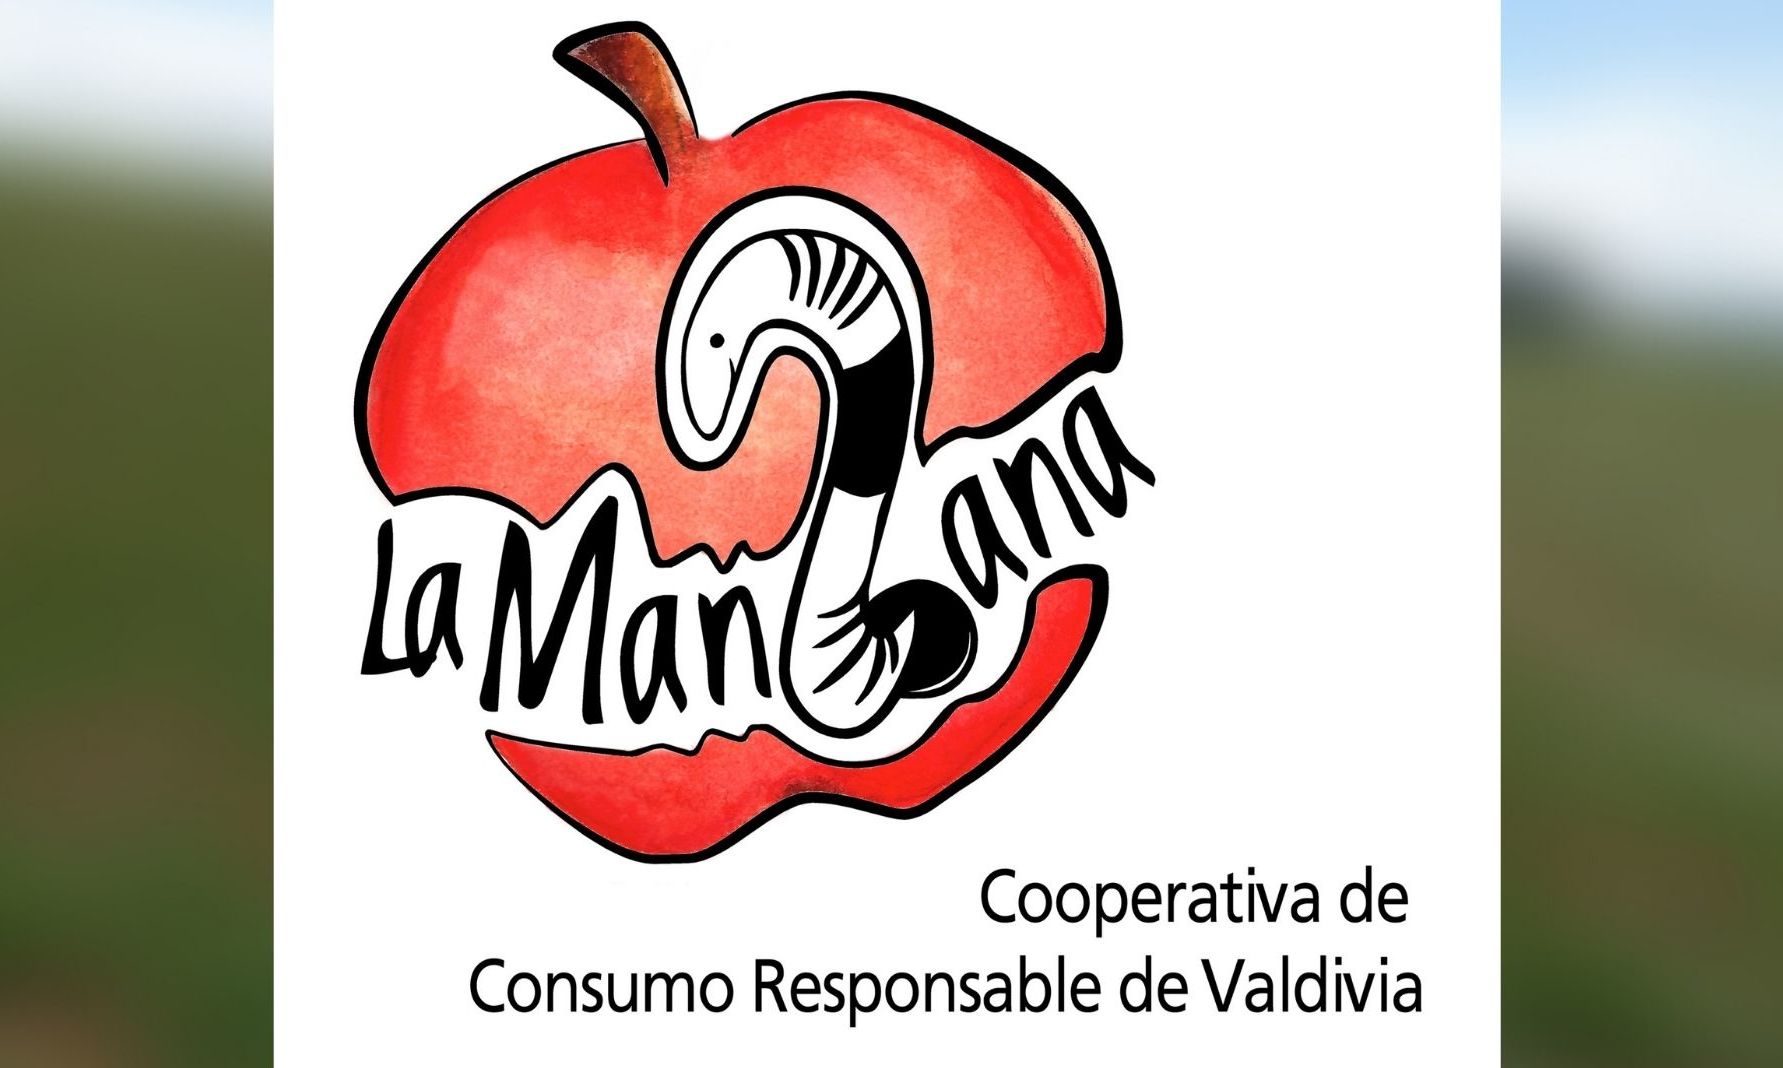 Cooperativa de Consumo Responsable La Manzana informa desvinculación de grupo de socias y socios